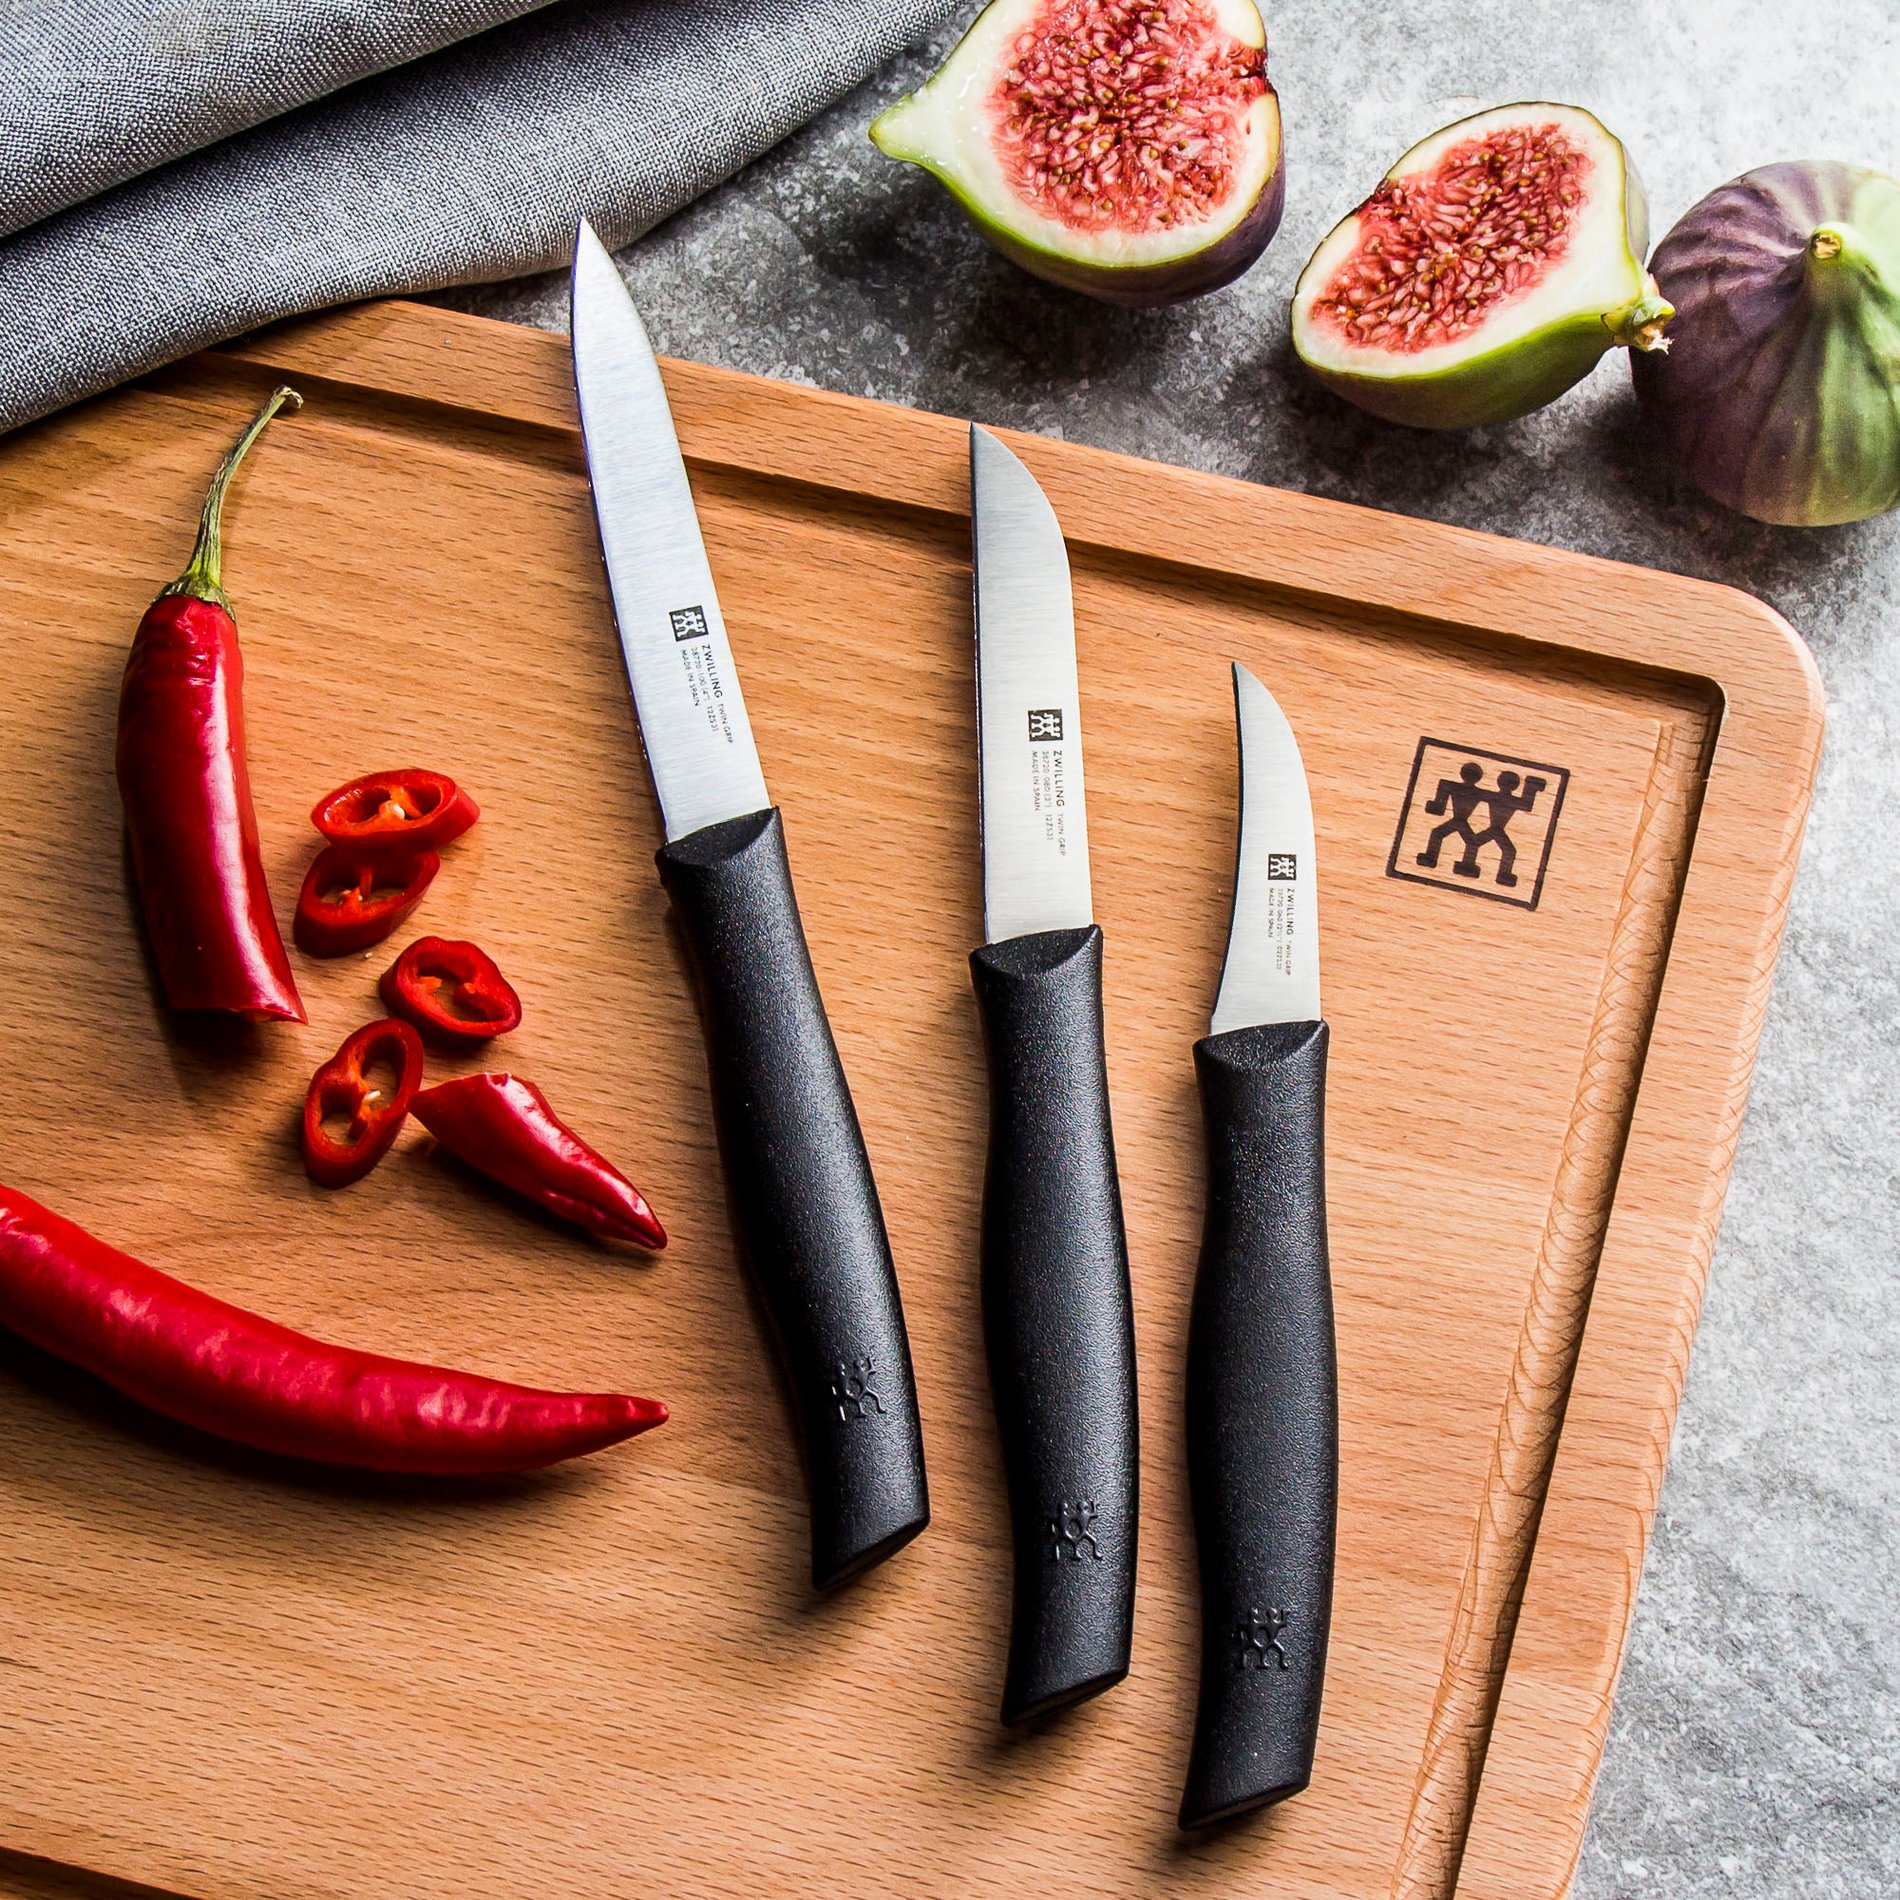 ZWILLING Twin Grip 3 ks - sada nerezových kuchyňských nožů na loupání zeleniny a ovoce